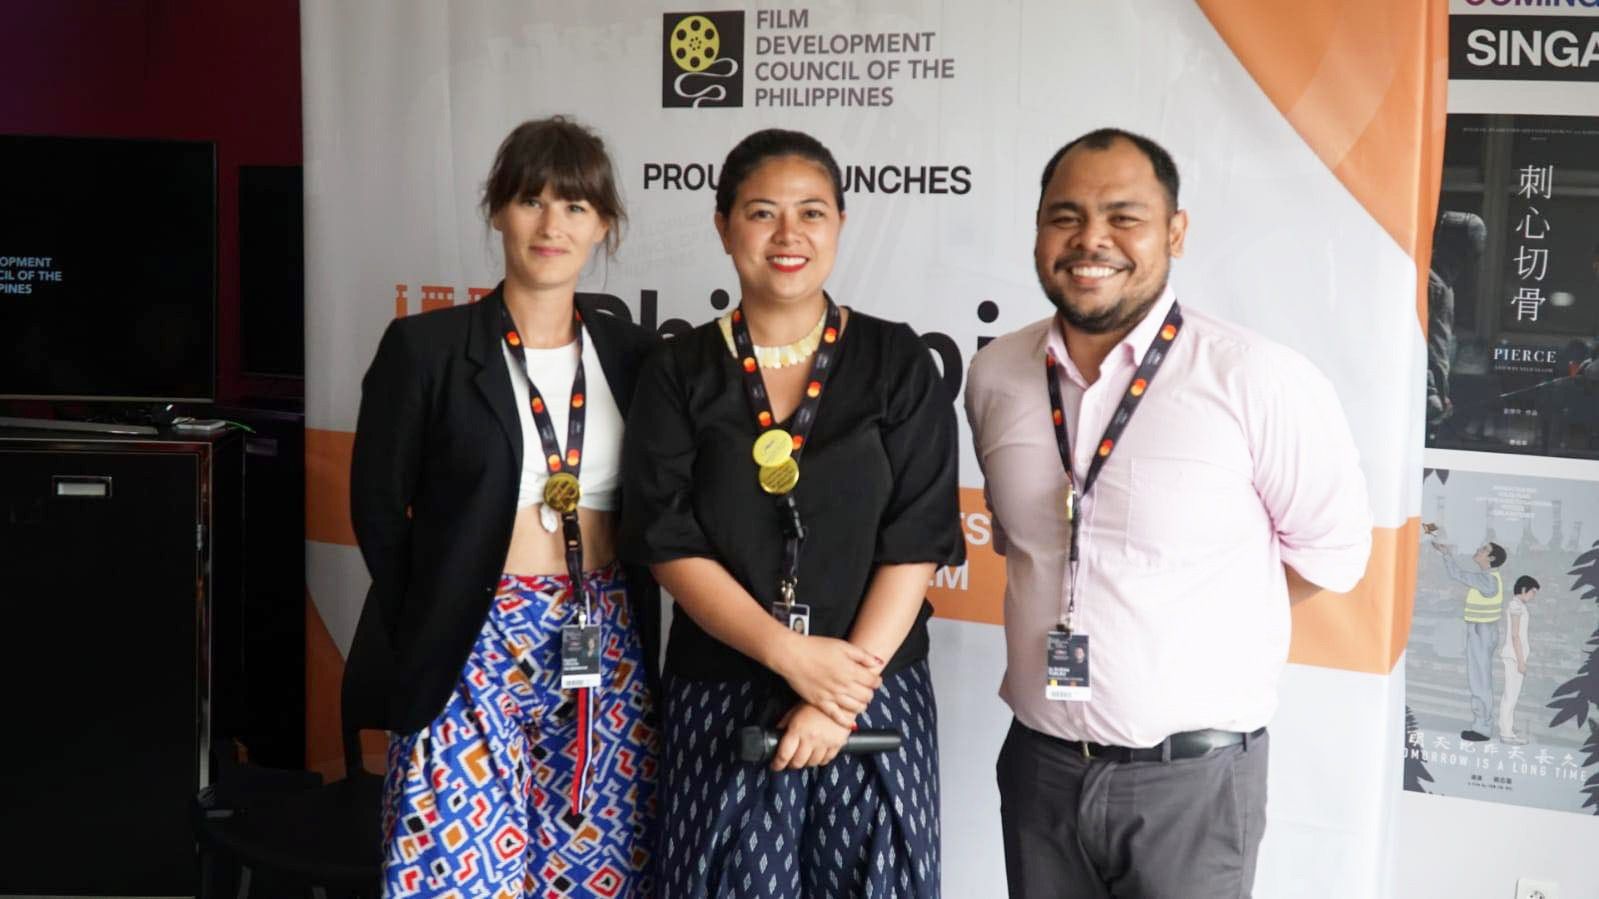 FDCP meluncurkan program untuk mengintensifkan distribusi global film Filipina